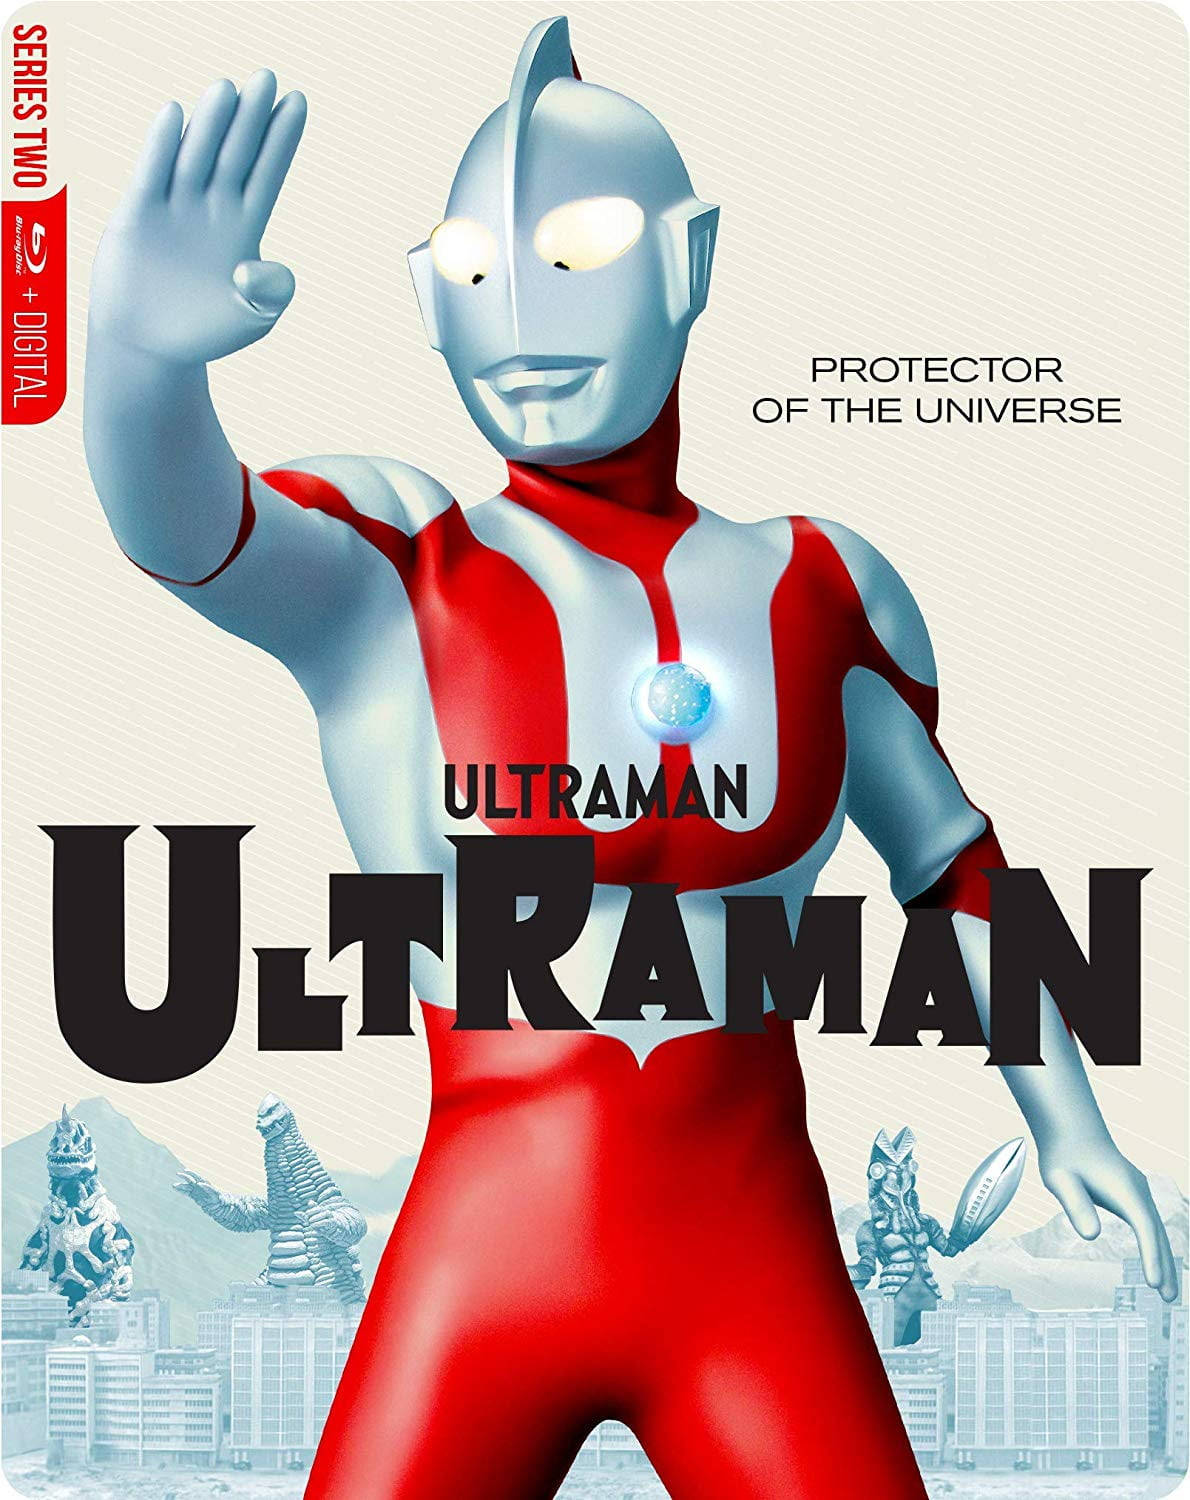 Ultraman The Ultimate Hero Wallpaper